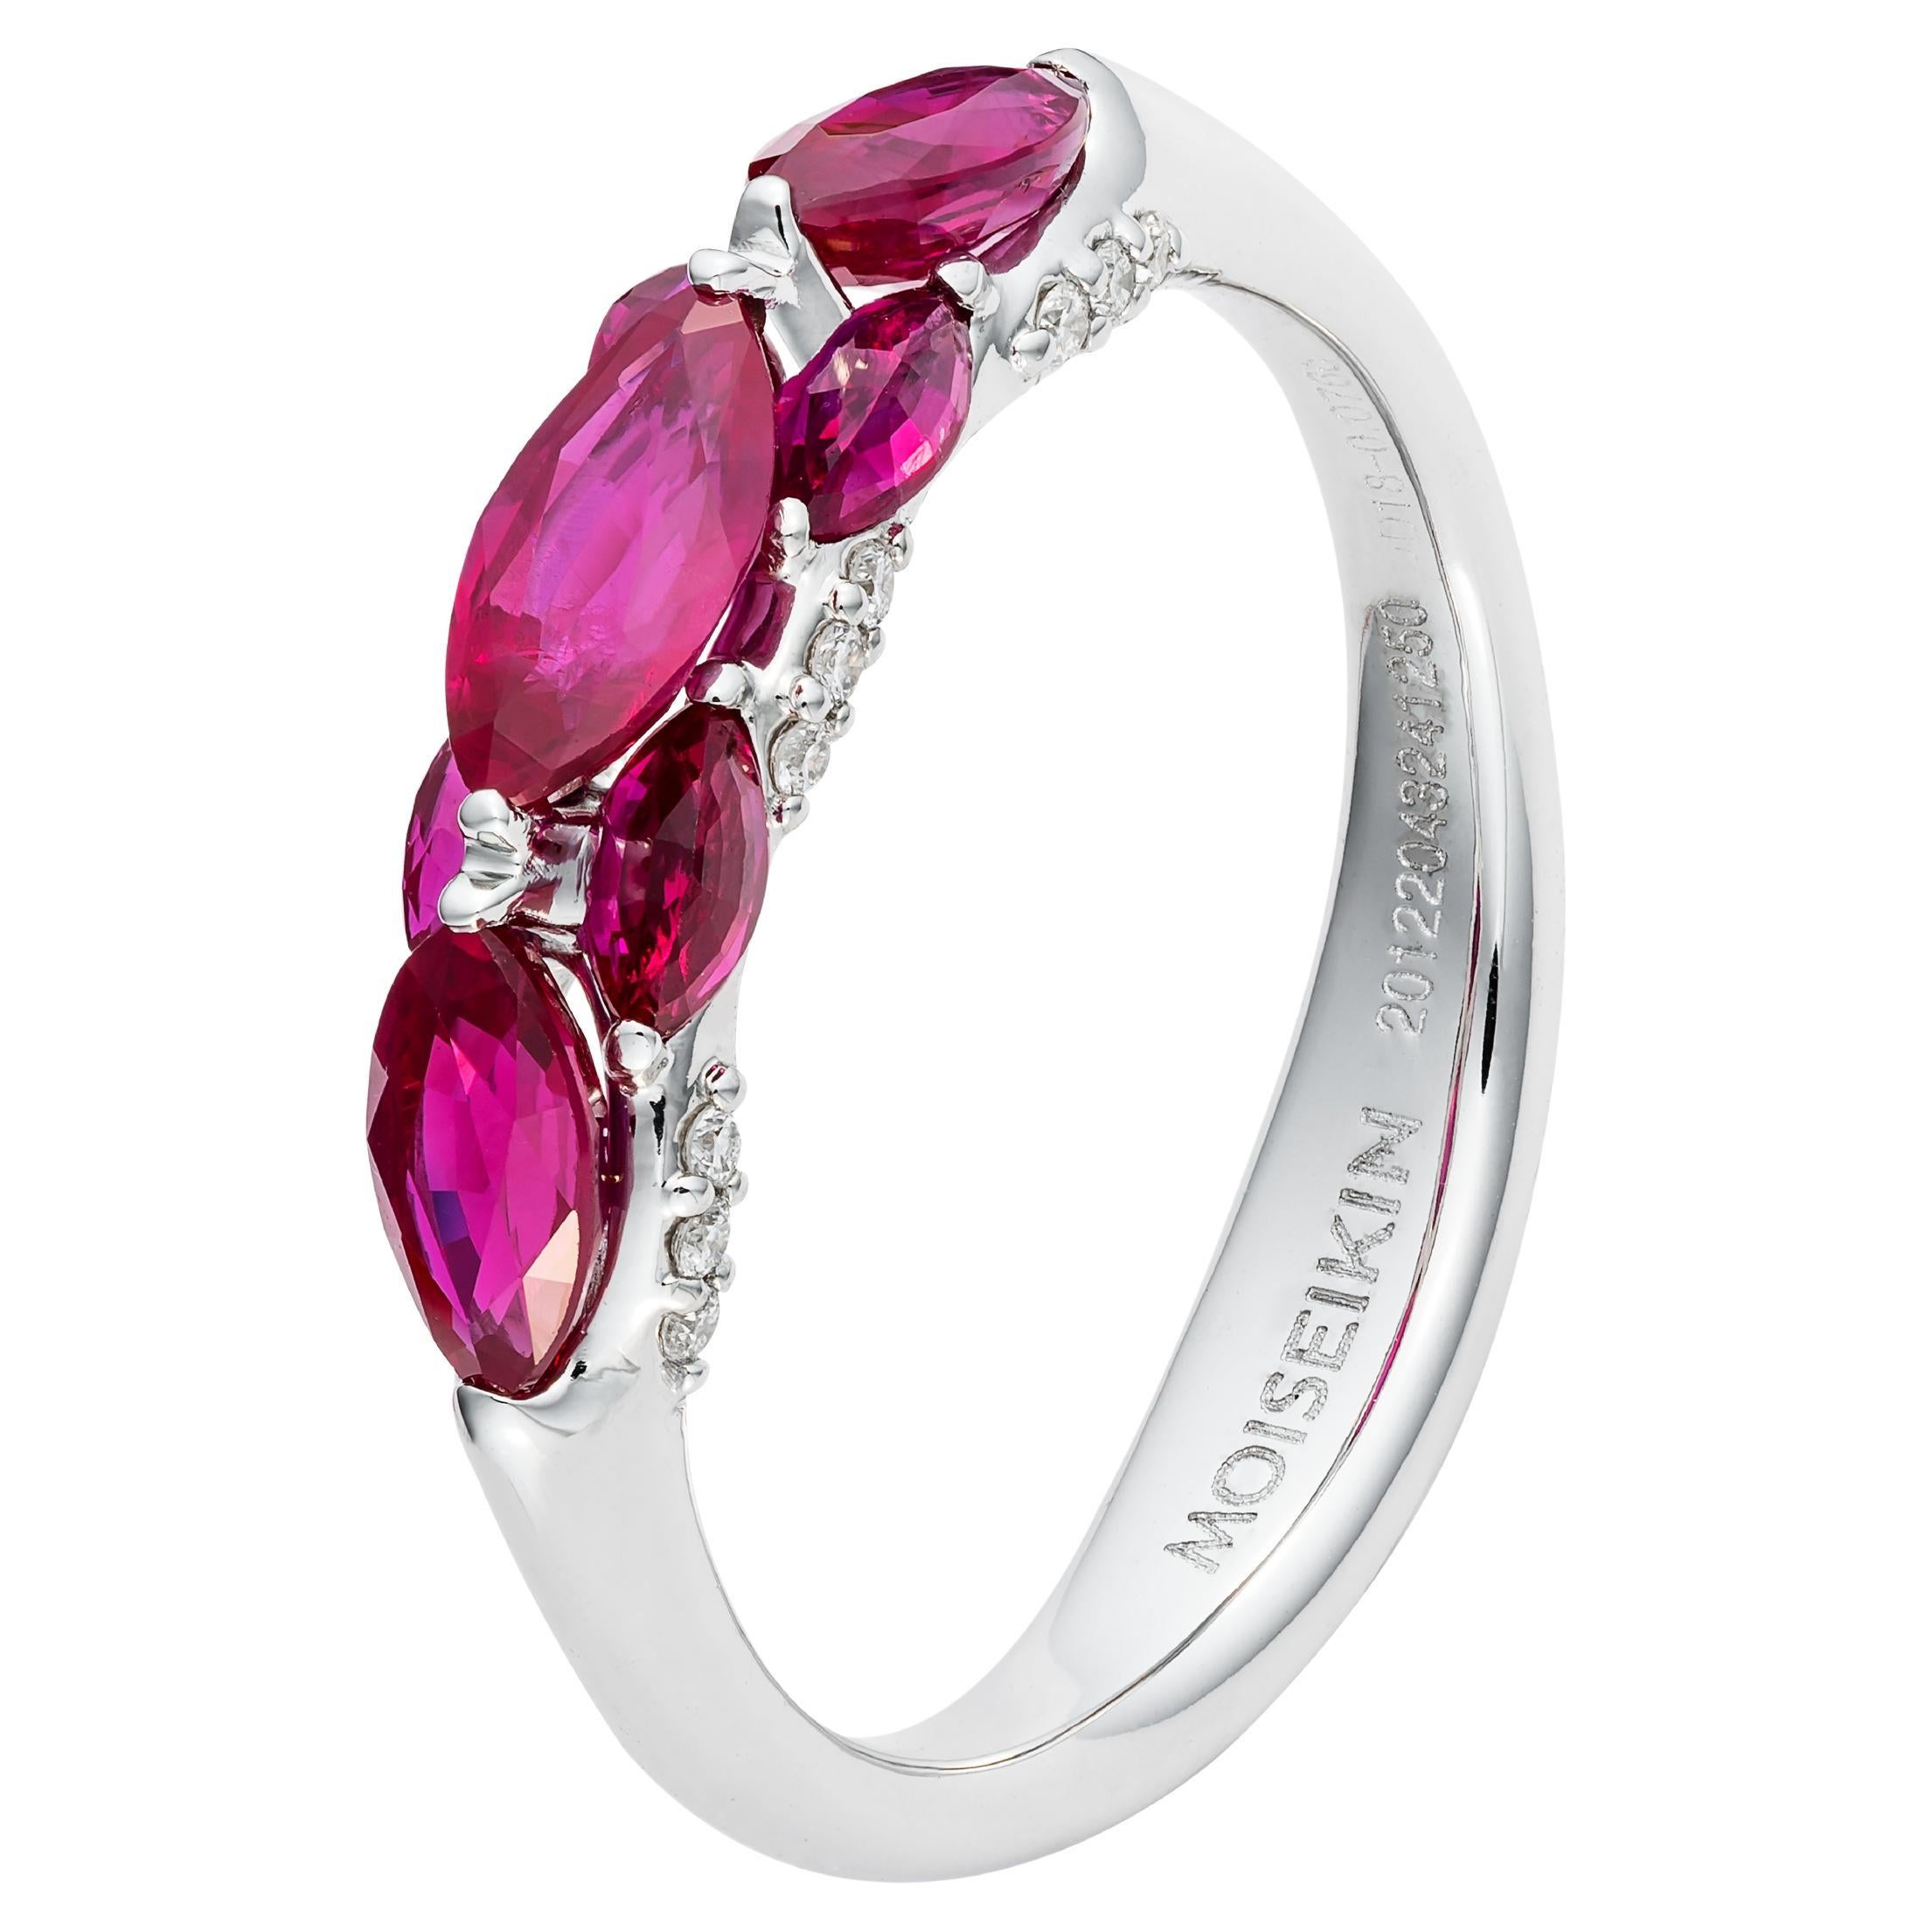 La bague en rubis et diamants de la collection Harmony of Water de MOISEIKIN symbolise l'amour et la passion. Le mélange harmonieux de rubis saturés, méticuleusement montés dans des sertis traditionnels ou inversés uniques, irradie une énergie